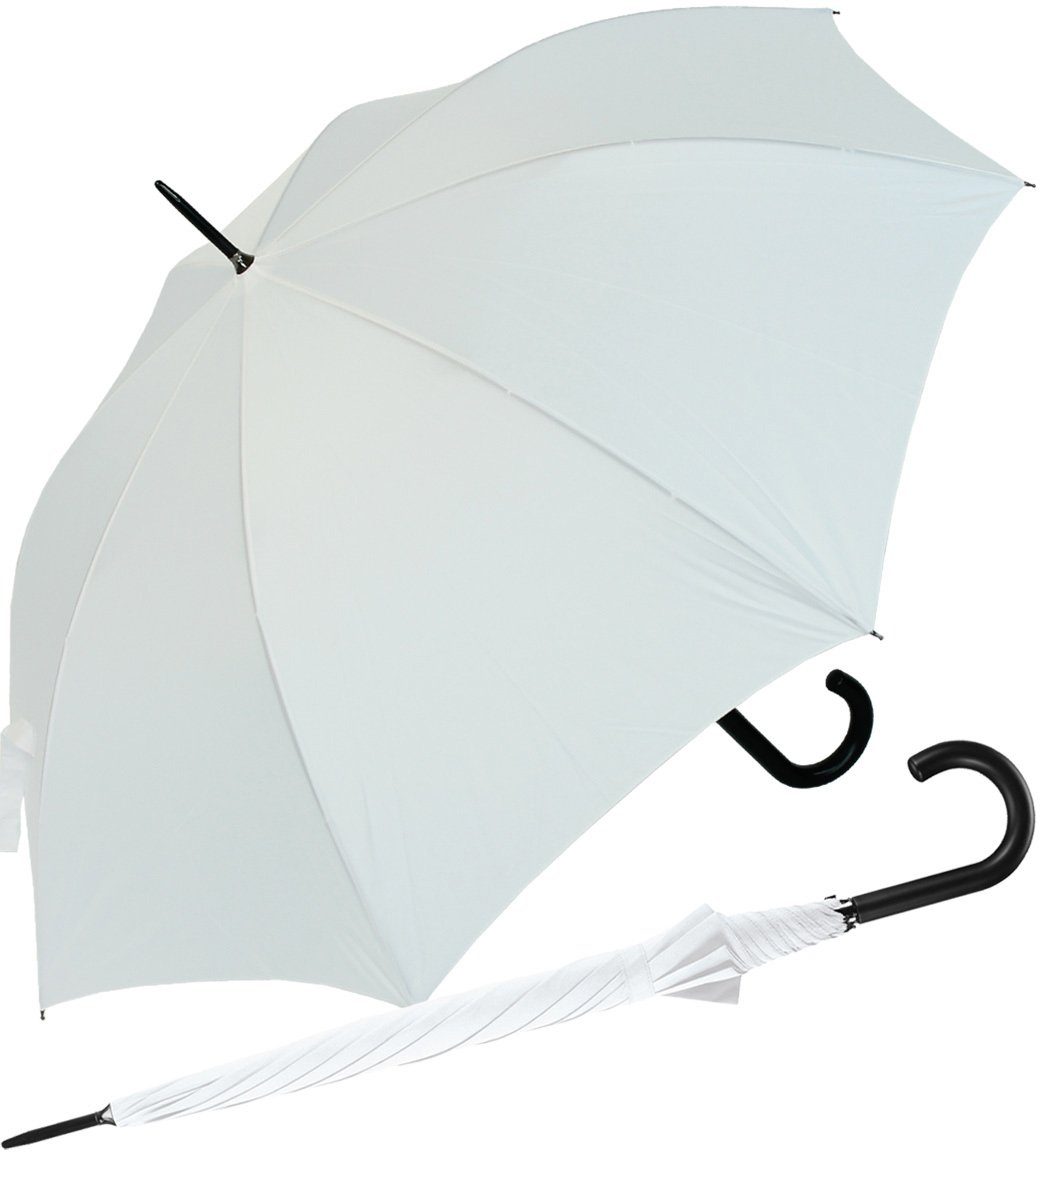 RS-Versand Langregenschirm großer stabiler Regenschirm mit Auf-Automatik, für Damen und Herren in vielen modischen Farben weiß